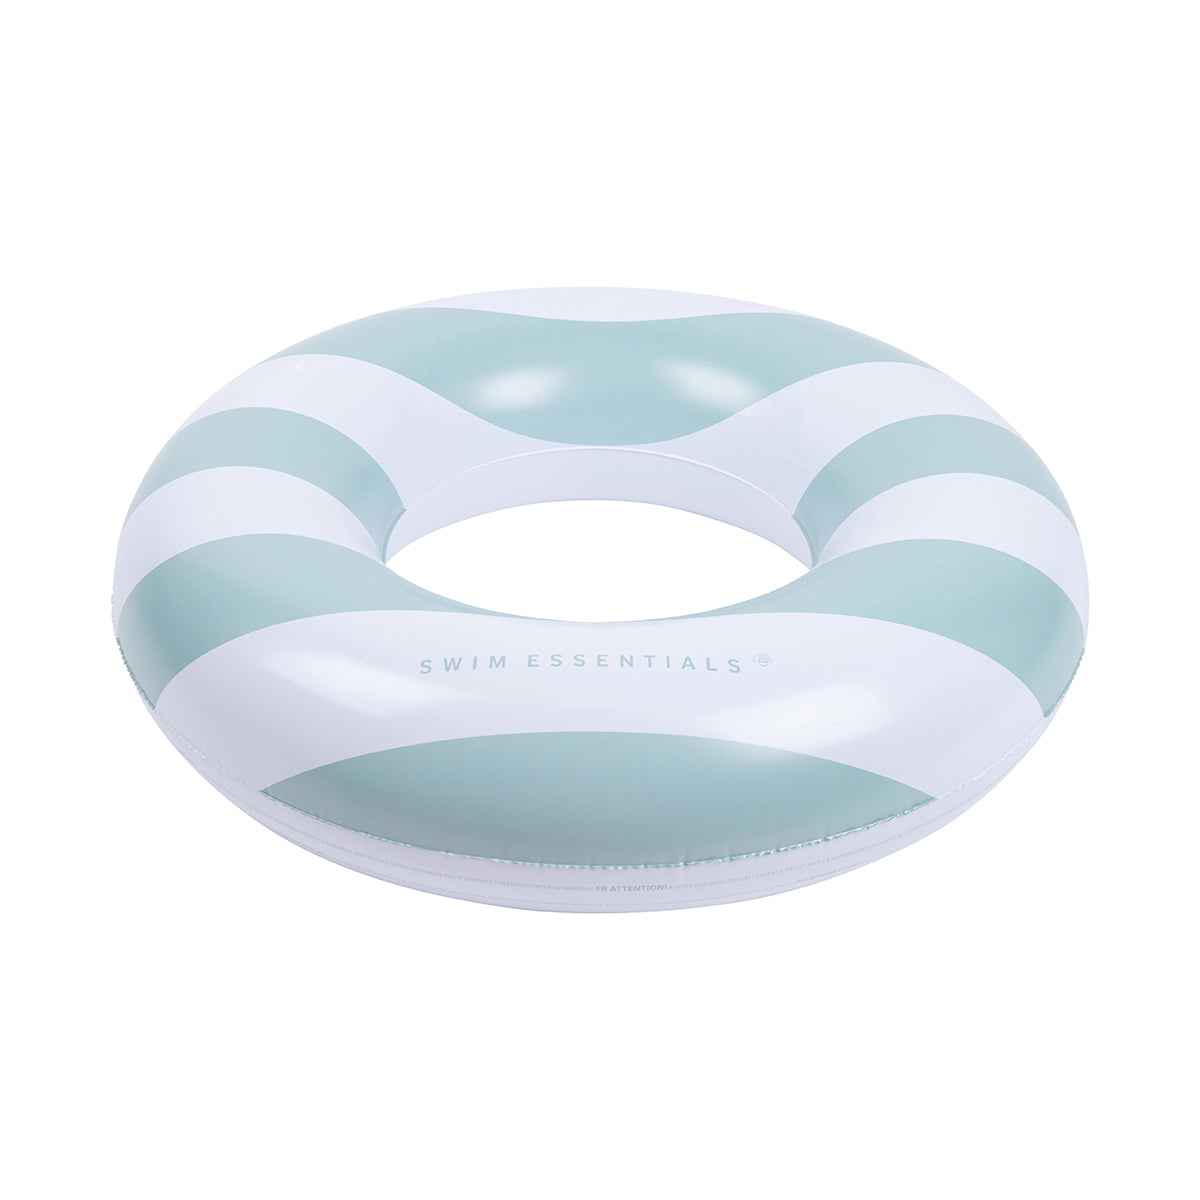 De Swim Essentials zwemband 90 cm green white stripes is het perfecte accessoire voor jouw kindje tijdens een dagje bij het zwembad of de zee. Deze leuke zwemband is niet rond maar heeft de vorm van een hart. VanZus.